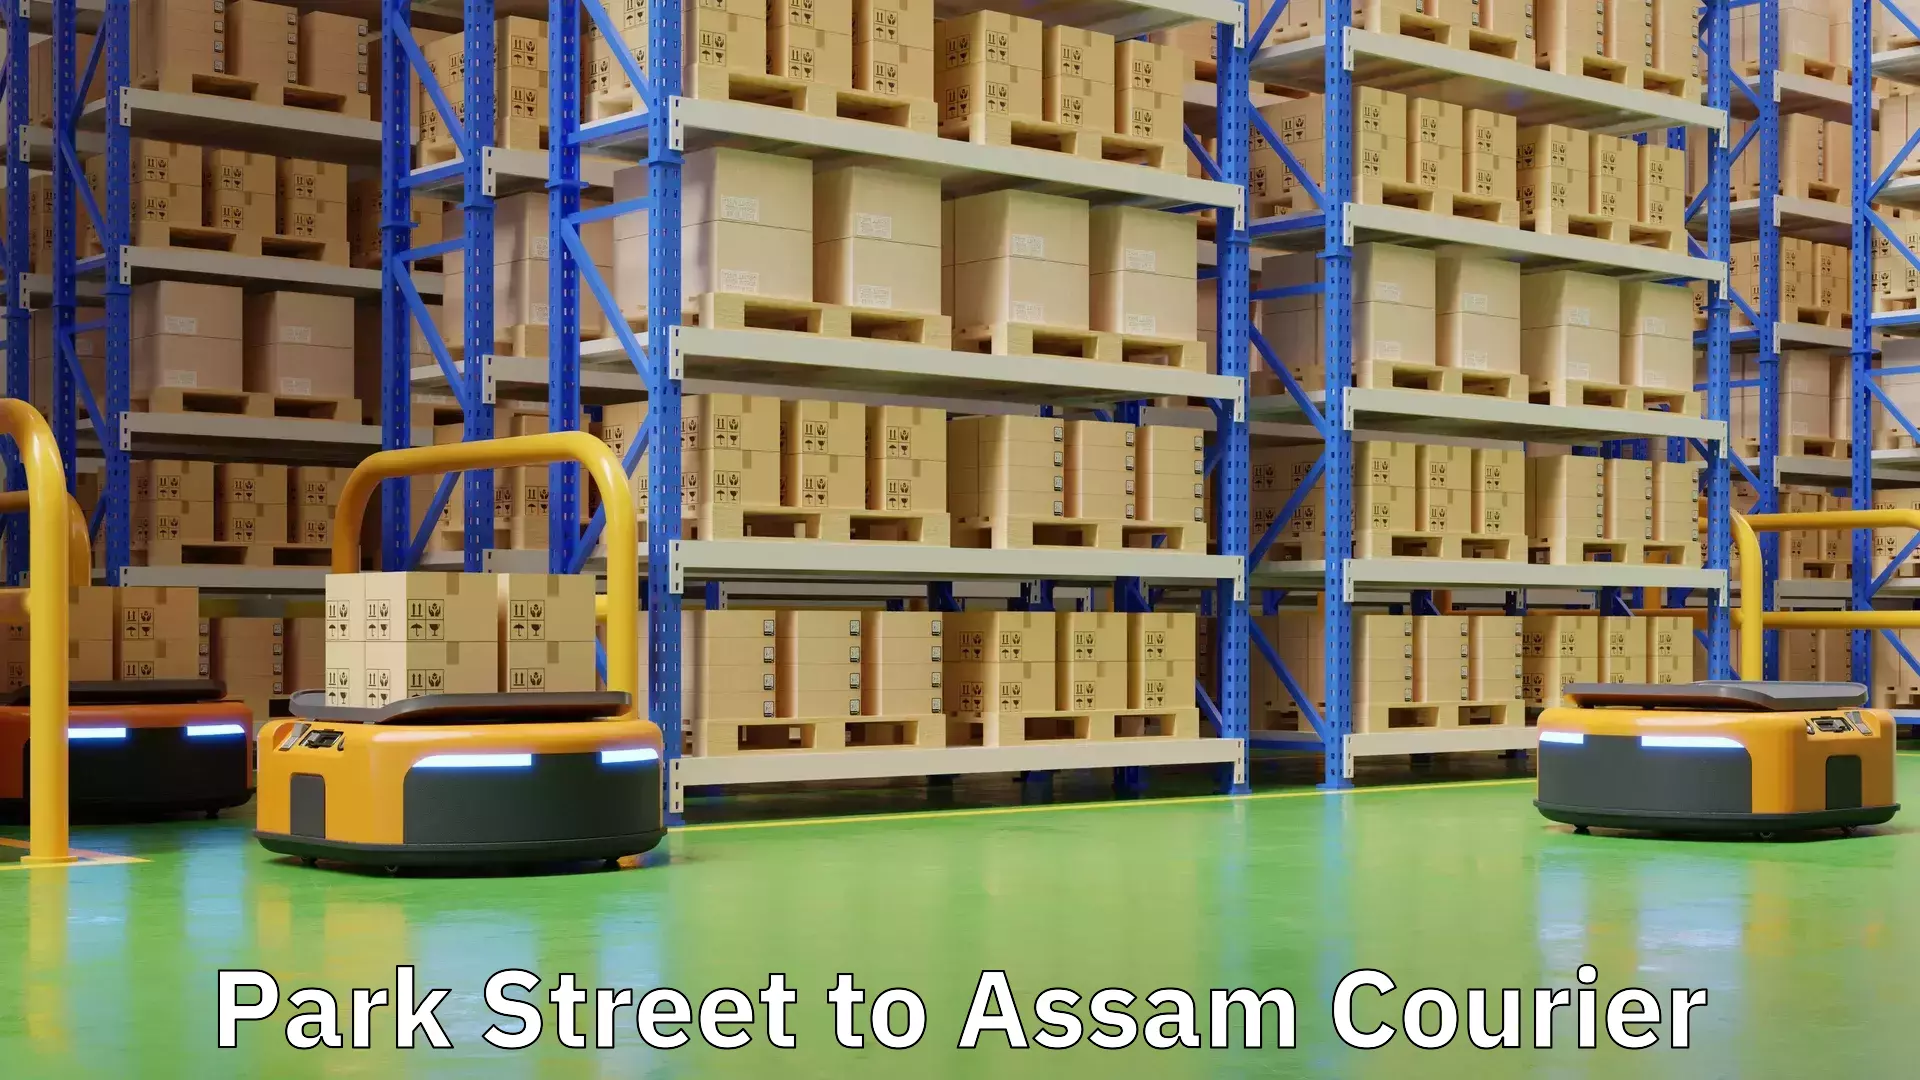 Premium courier services Park Street to Assam